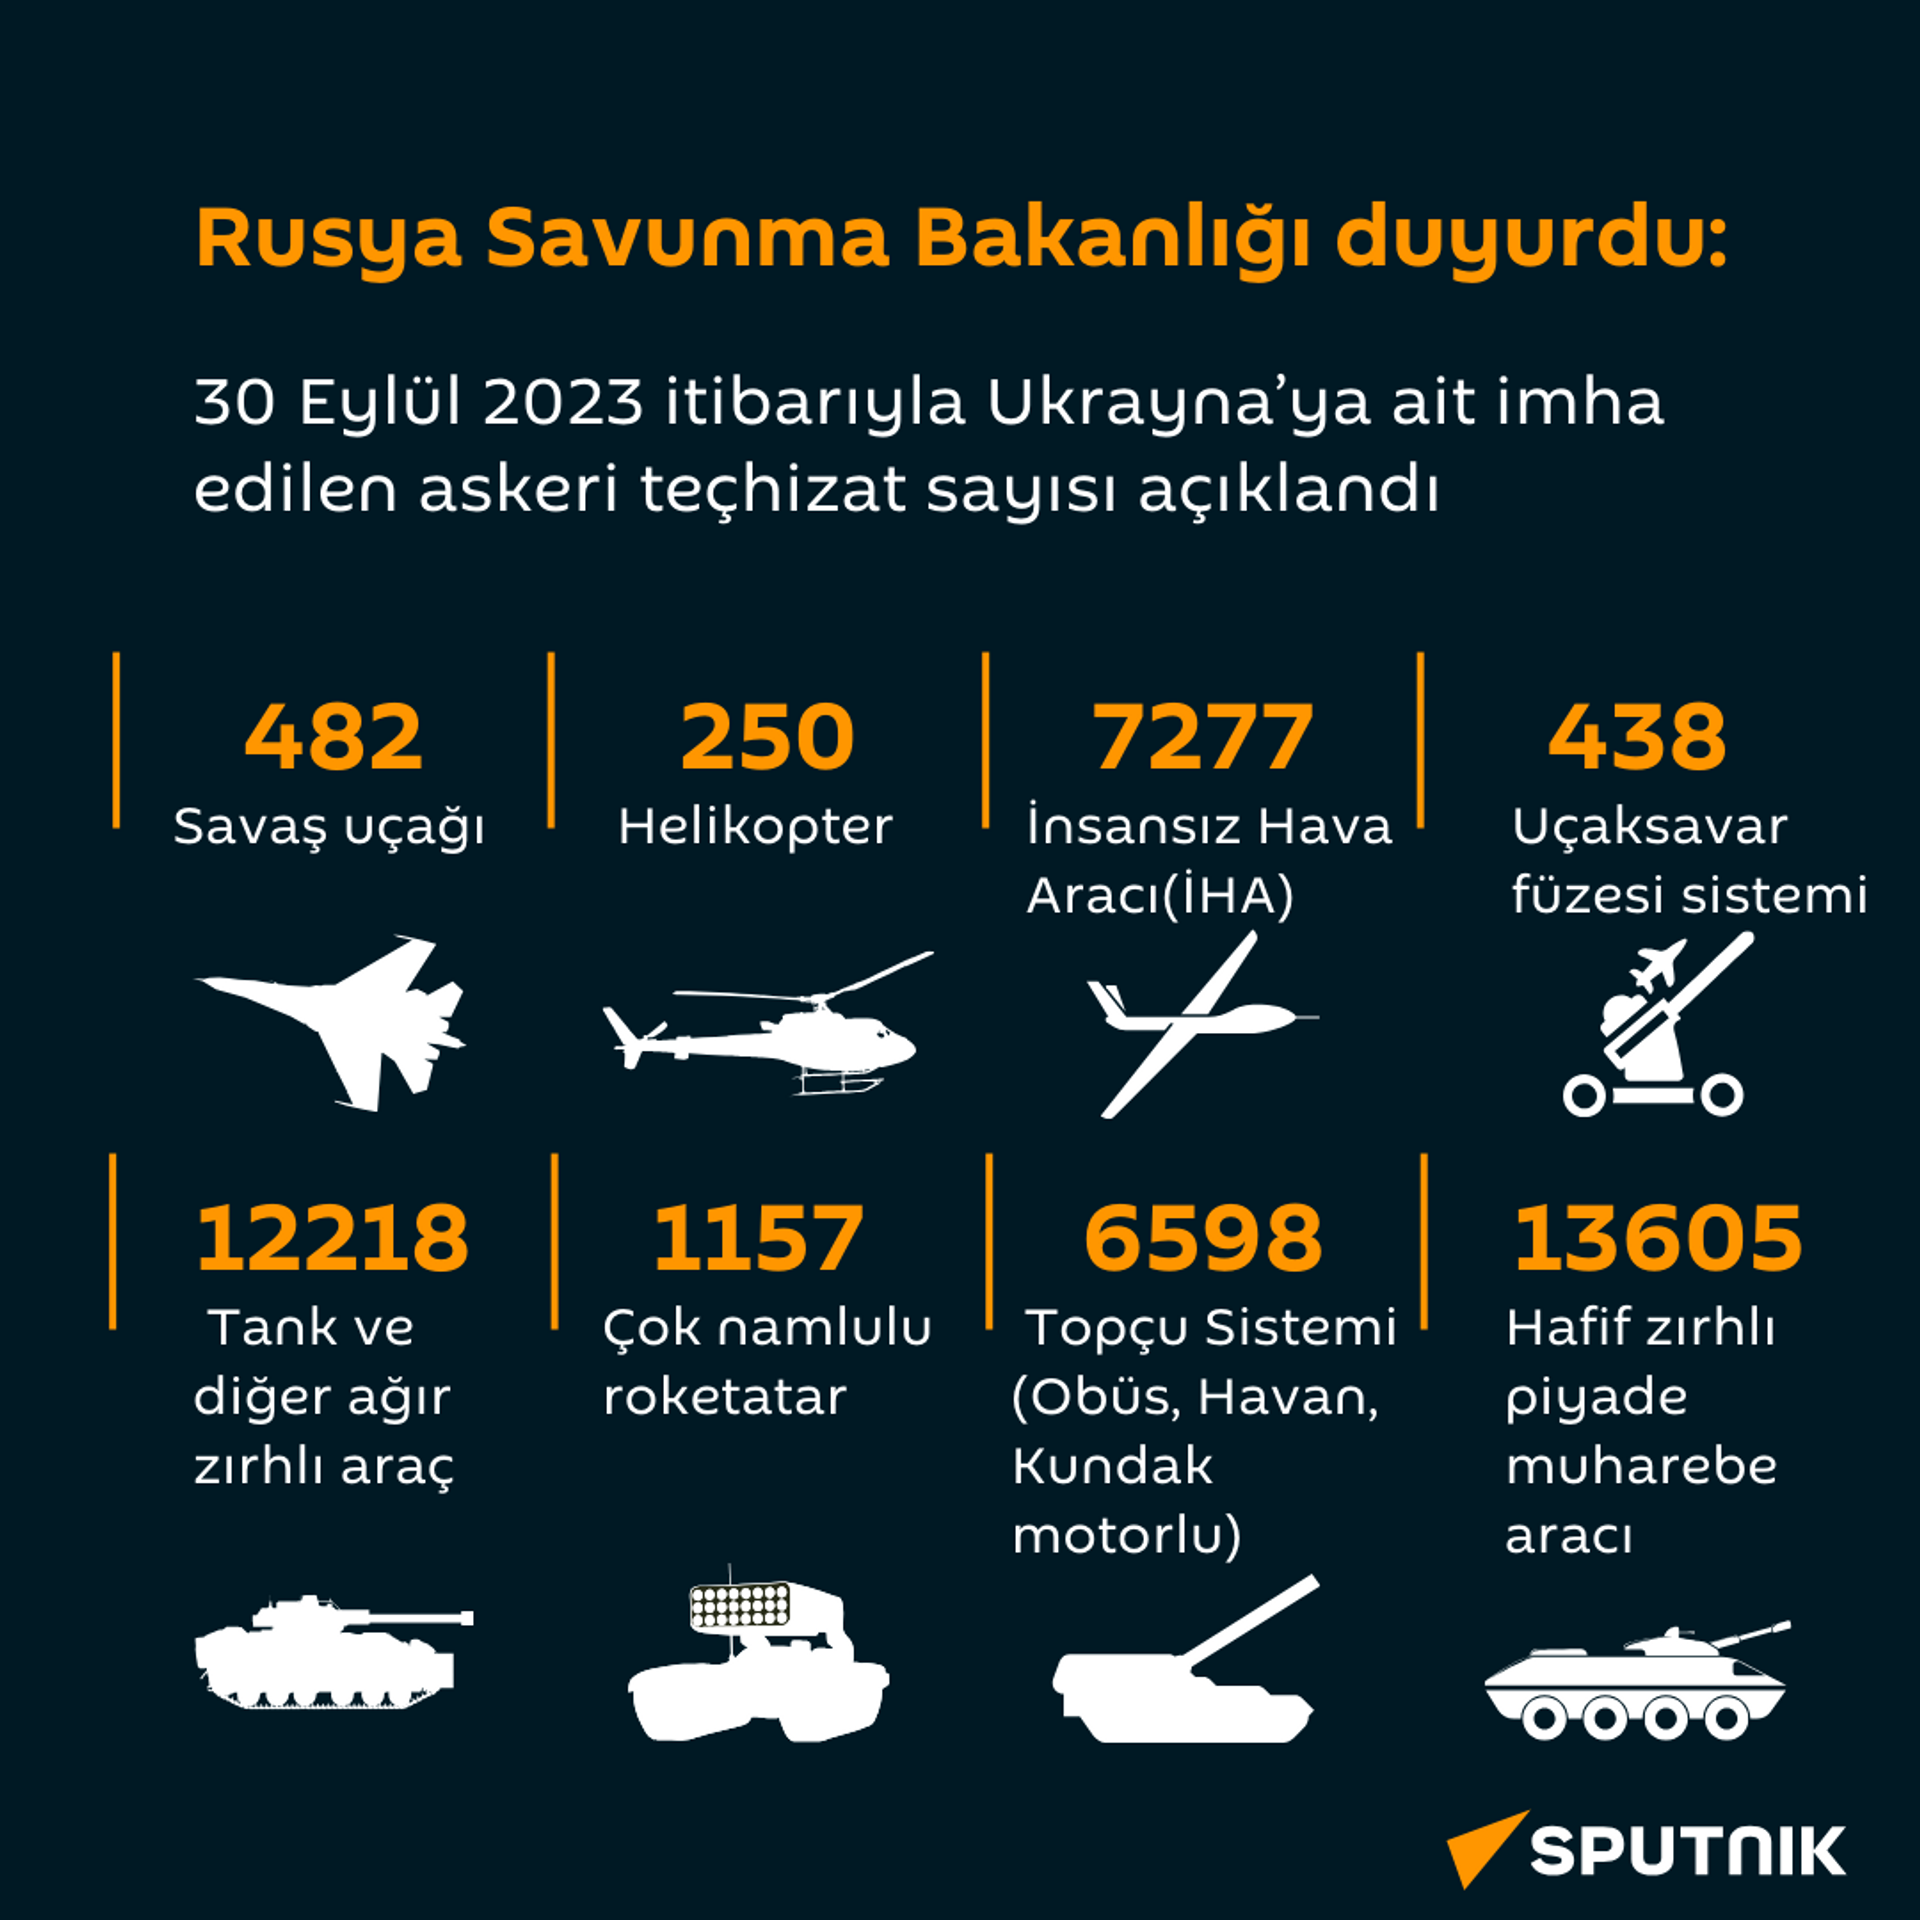 Rusya Savunma Bakanlığı - Sputnik Türkiye, 1920, 30.09.2023